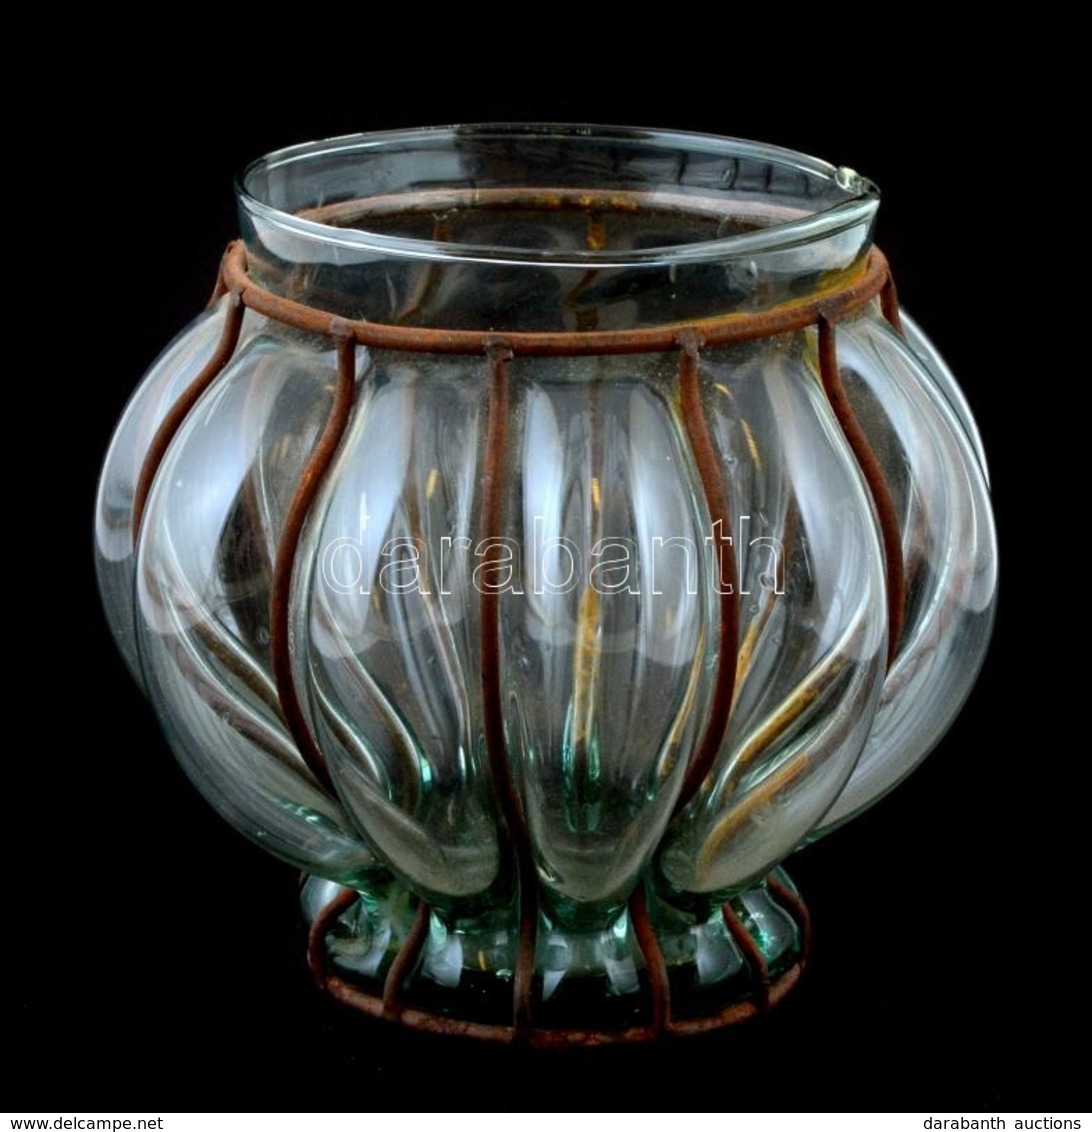 Fújt üveg Váza, Vas Rátéttel, M: 16 Cm - Glas & Kristall